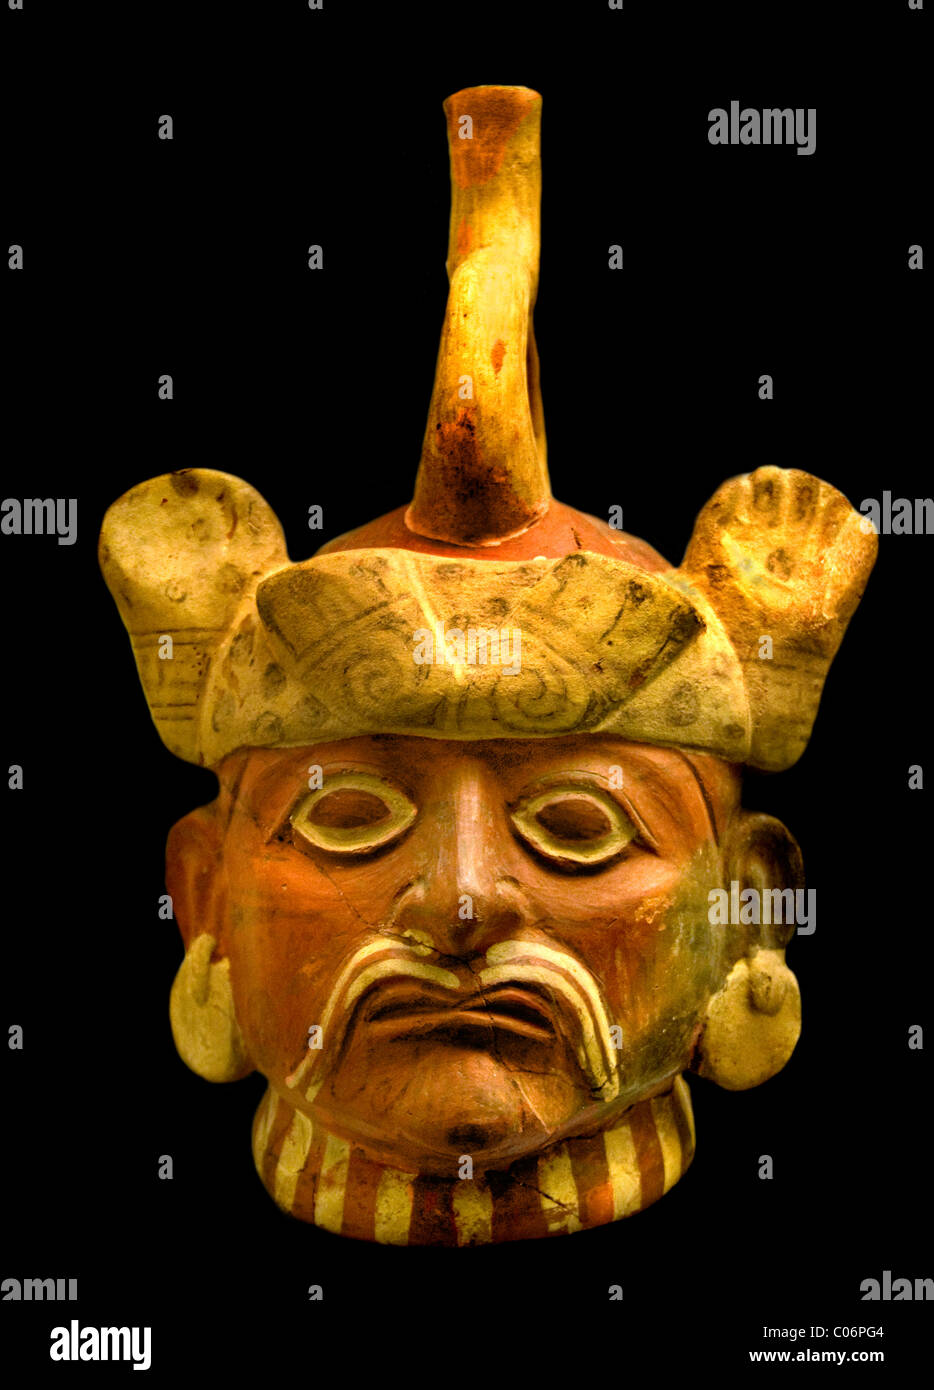 Grande Signore come indicato dal suo discorso di artigli felini, i suoi ampi lembi di orecchio e la sua pittura facciale, Moche o Mochica 100 d.C. - 700 d.C. Perù peruviano. Foto Stock